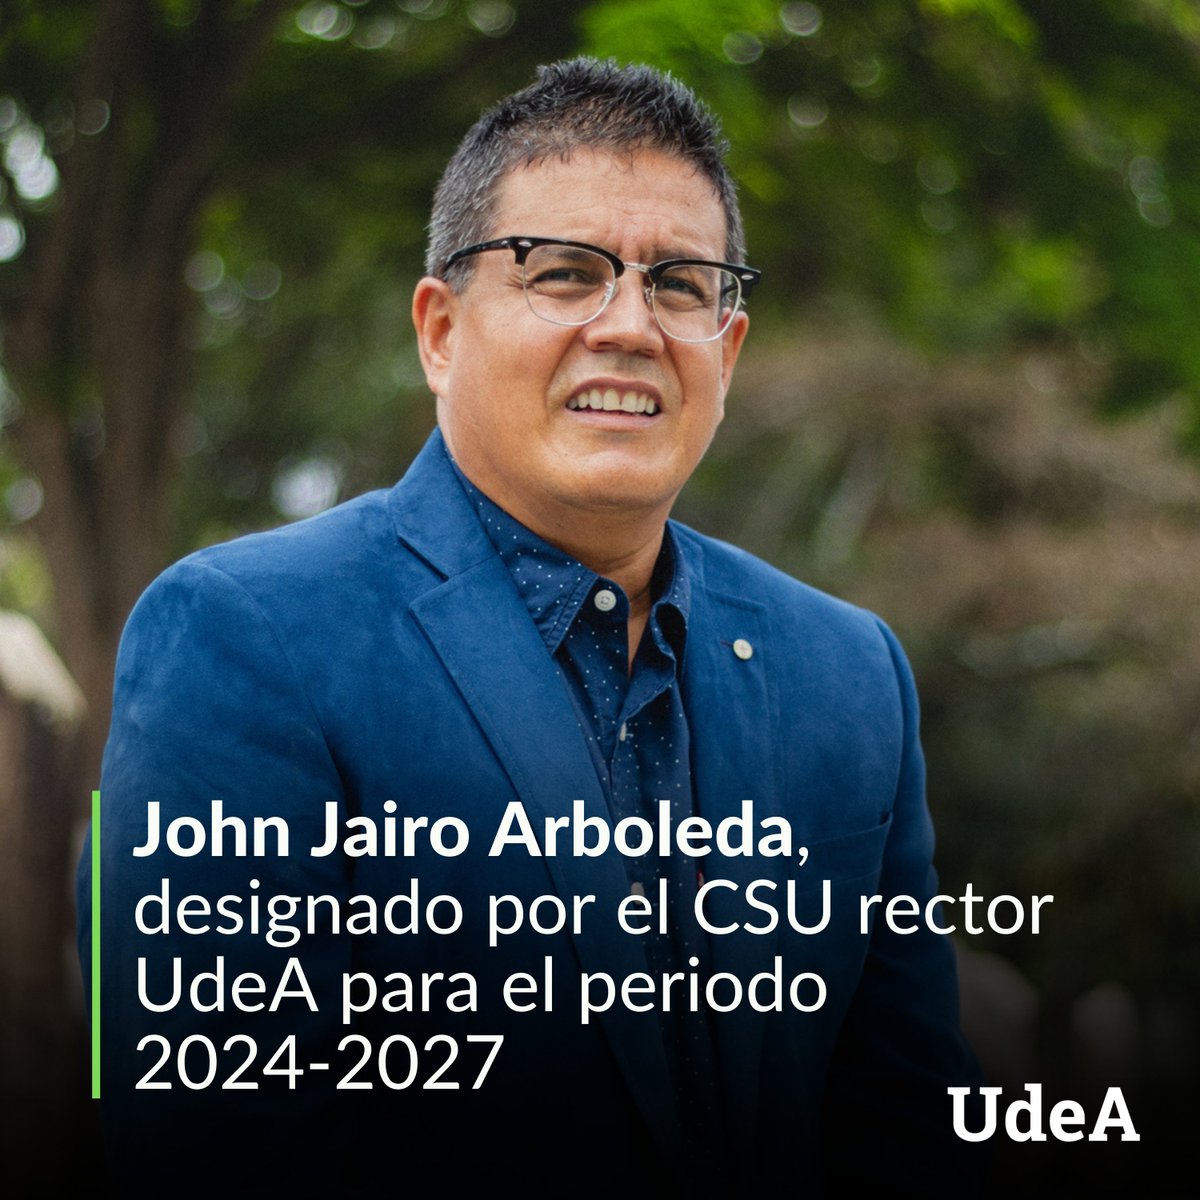 📌 John Jairo Arboleda Céspedes fue designado rector de la Universidad de Antioquia para el periodo 2024-2027. Este será su tercer periodo en el máximo cargo administrativo de la Alma Mater.